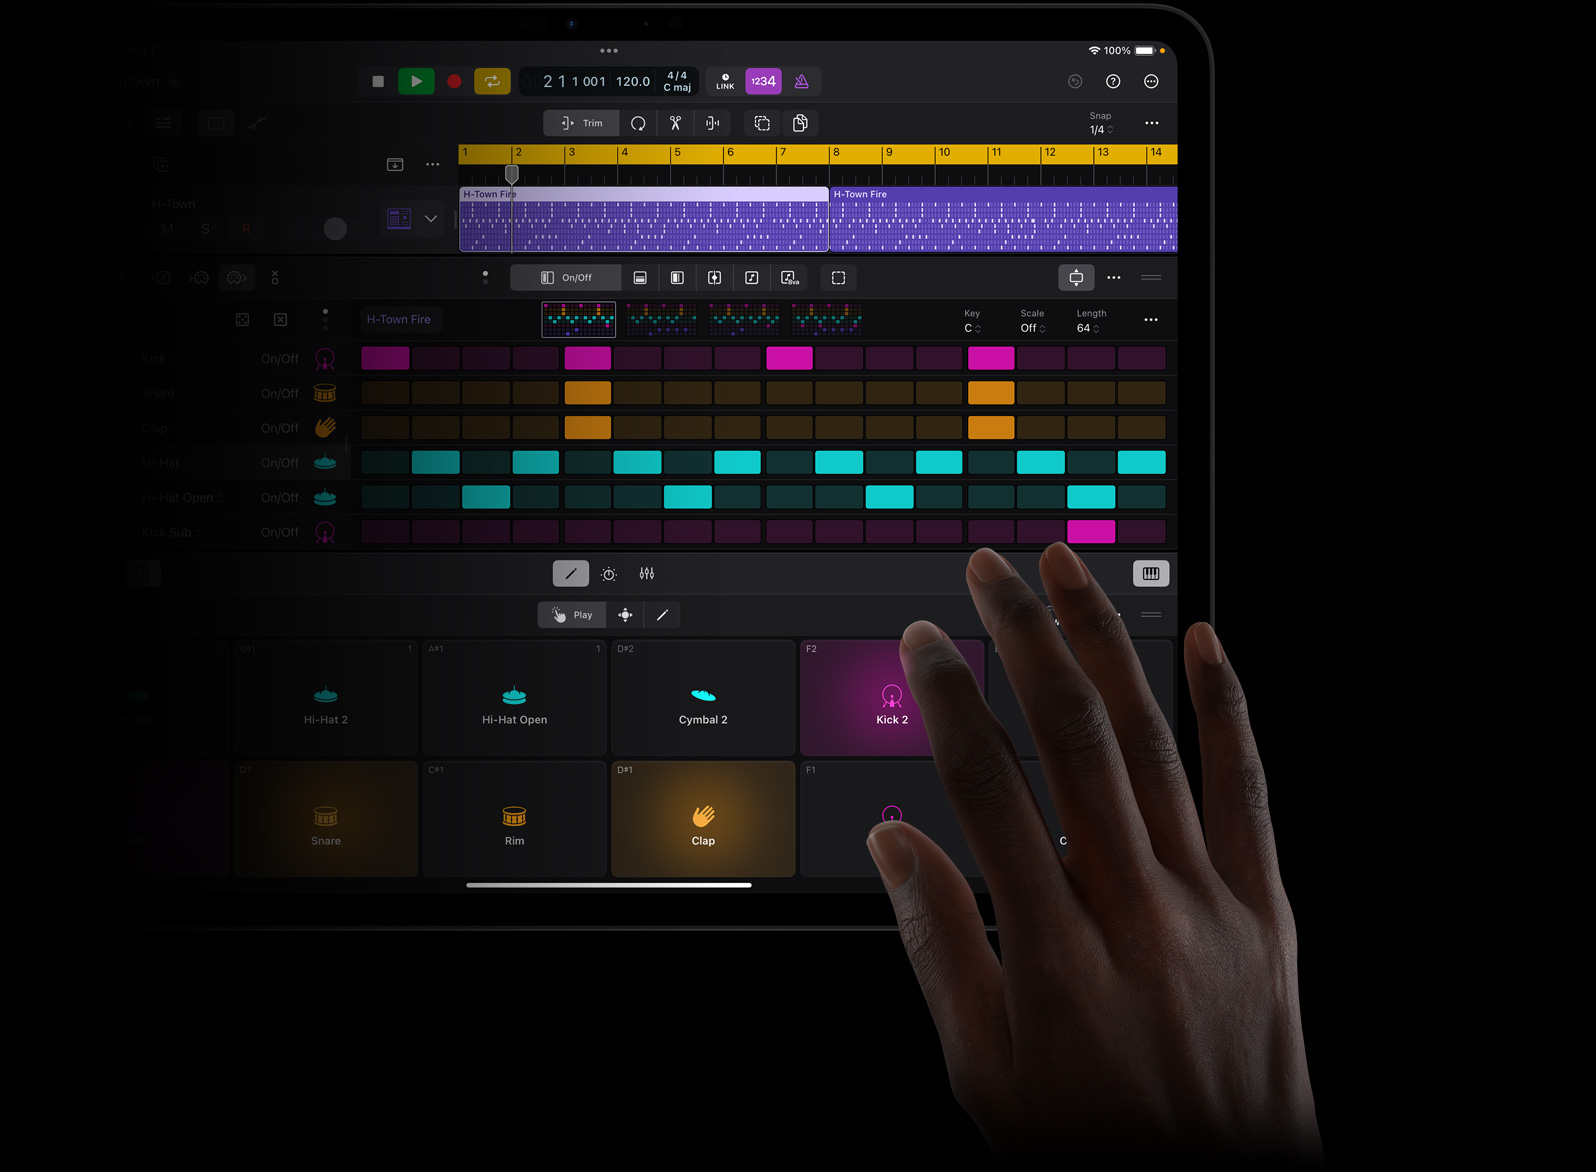 一只手点触 iPad Pro 屏幕，在 iPad Pro 上的 iPad 版 Logic Pro 中创建声音节拍。